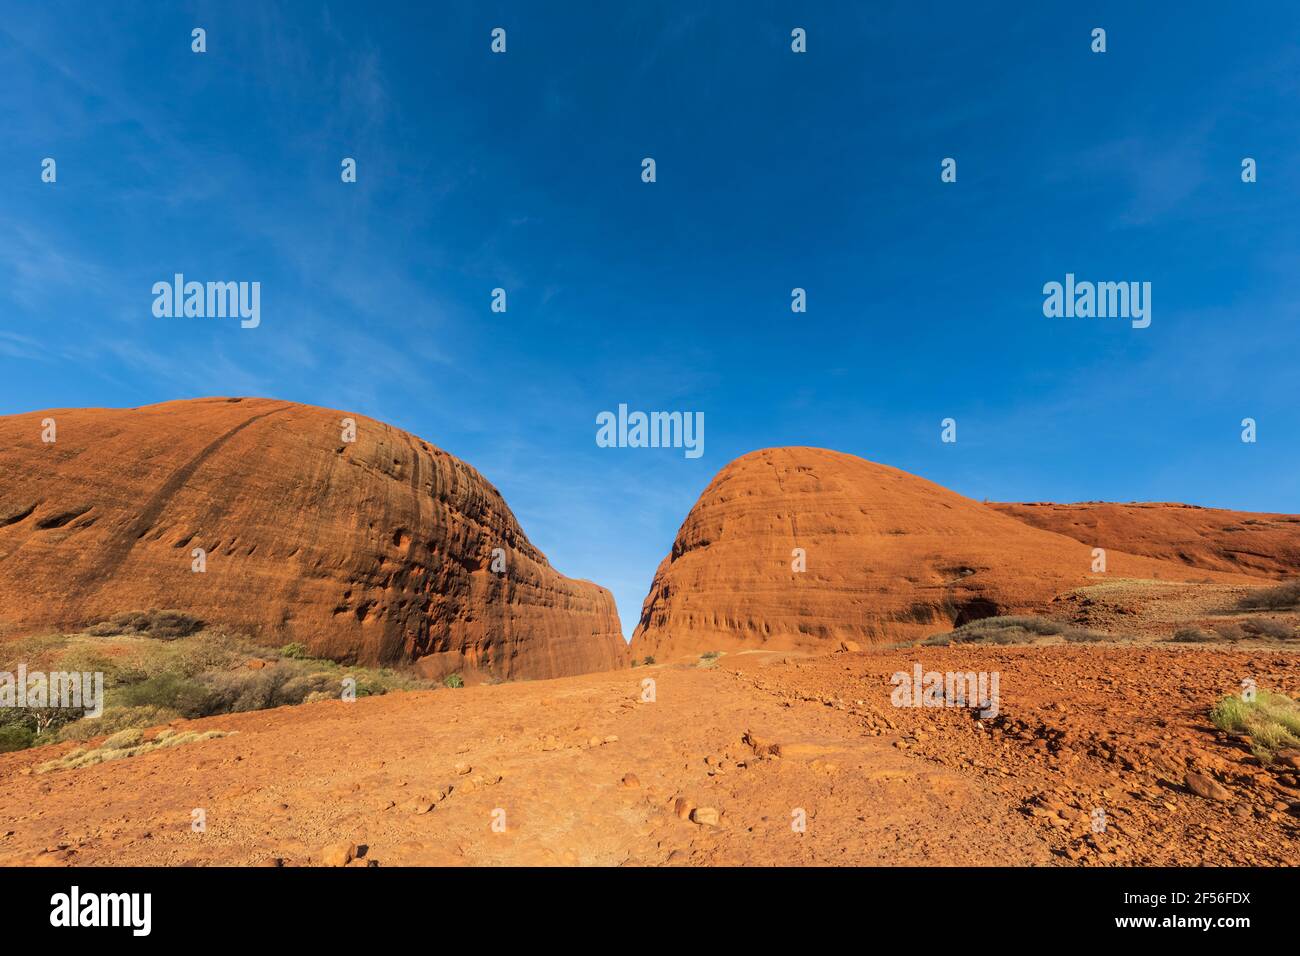 Australie, territoire du Nord, parc national d'Uluru Kata Tjuta dans le désert central de l'Australie Banque D'Images